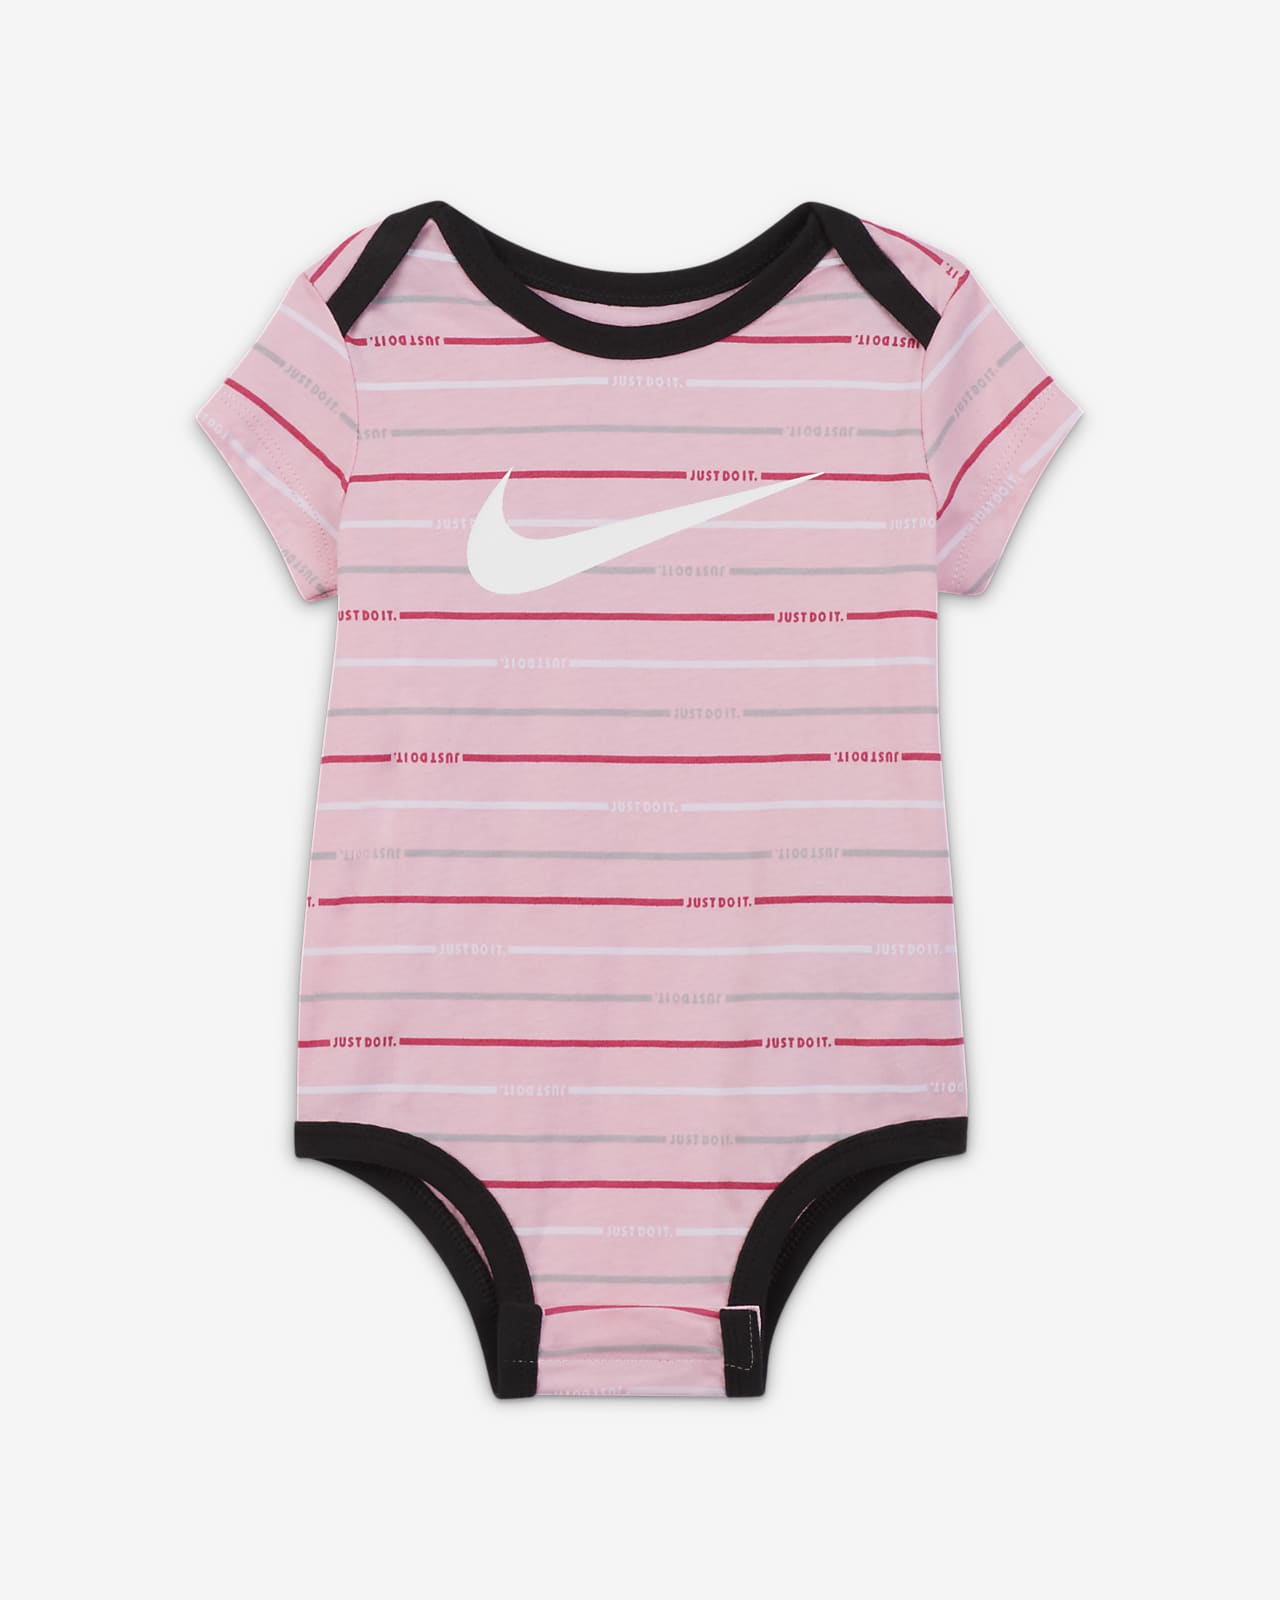 Nike Baby 3-Piece Set